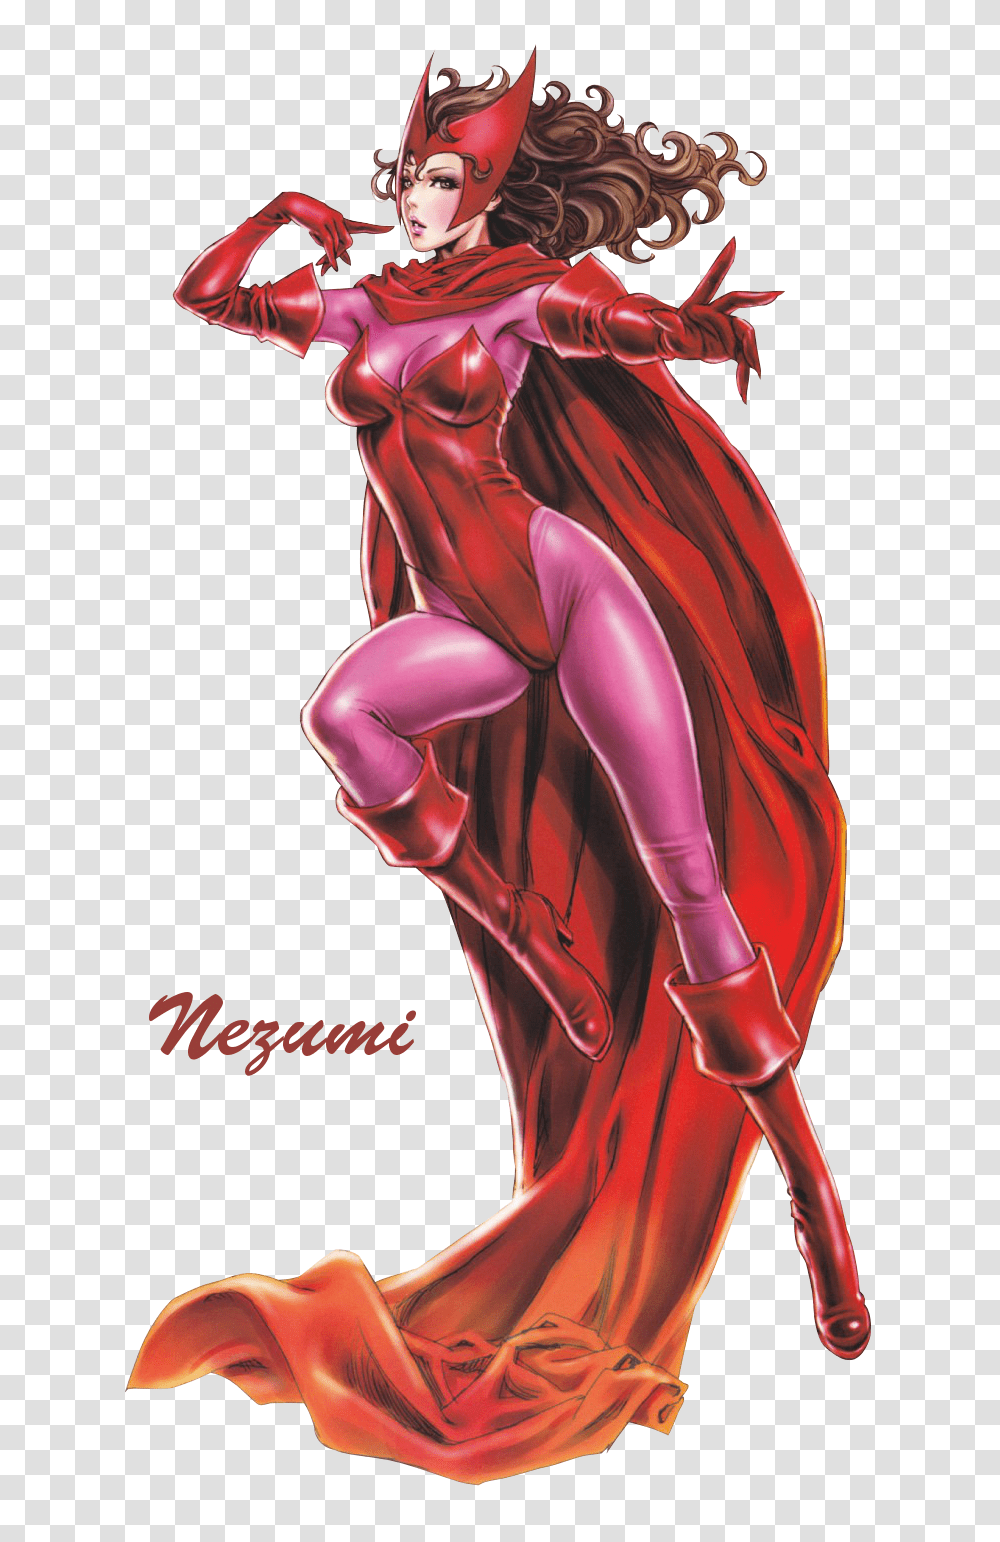 Download Hd Scarlet Witch Marvel Bishoujo Scarlet Witch Scarlet Witch Comics Iphone, Book, Graphics, Art, Manga Transparent Png